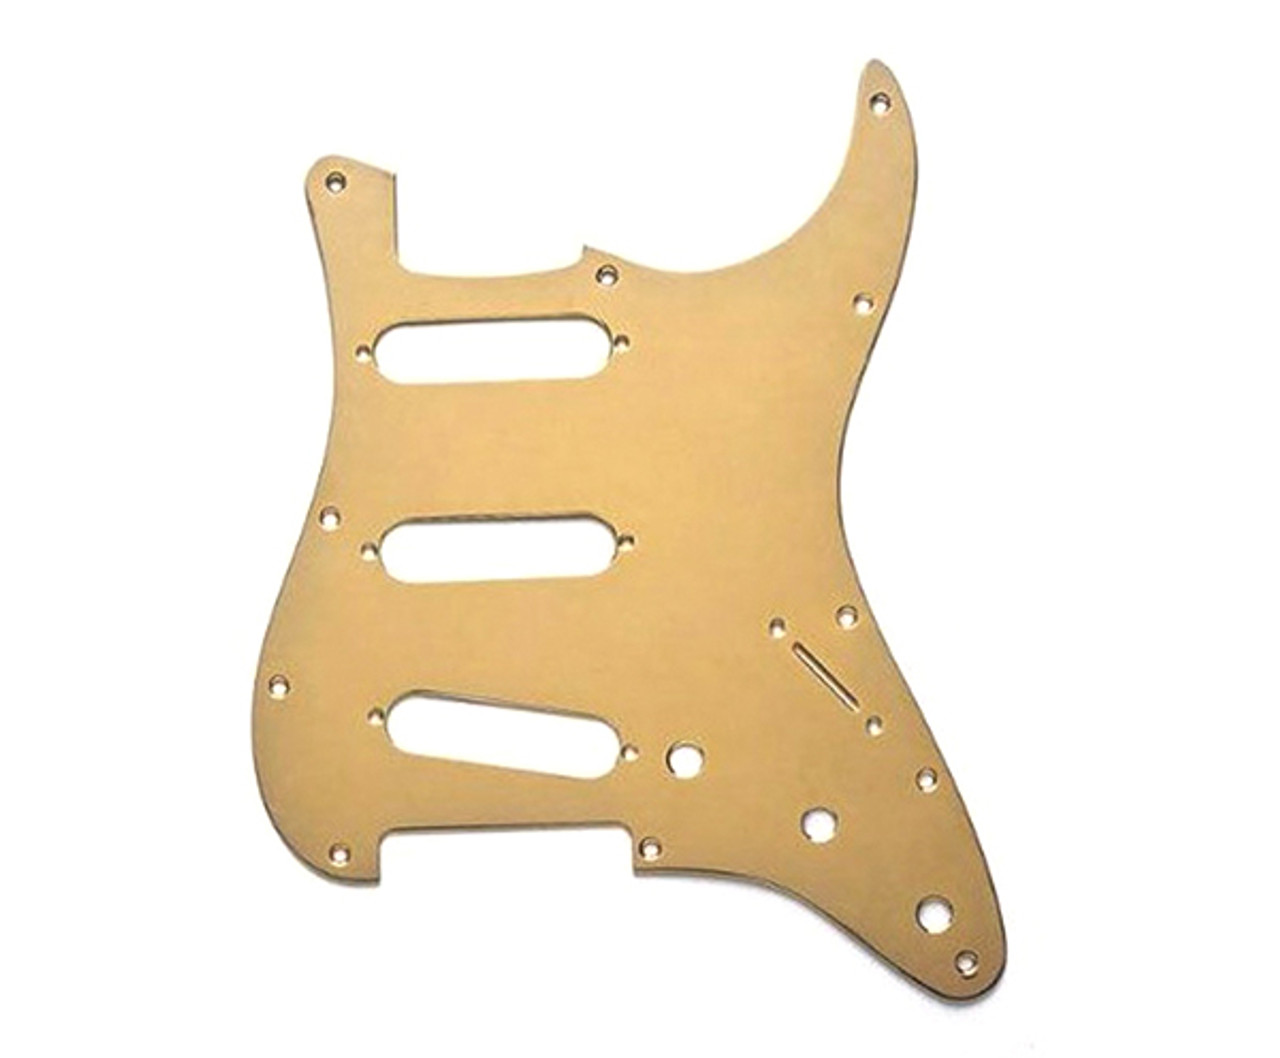 Guitar Pickguard-Pickboy S-type Brass